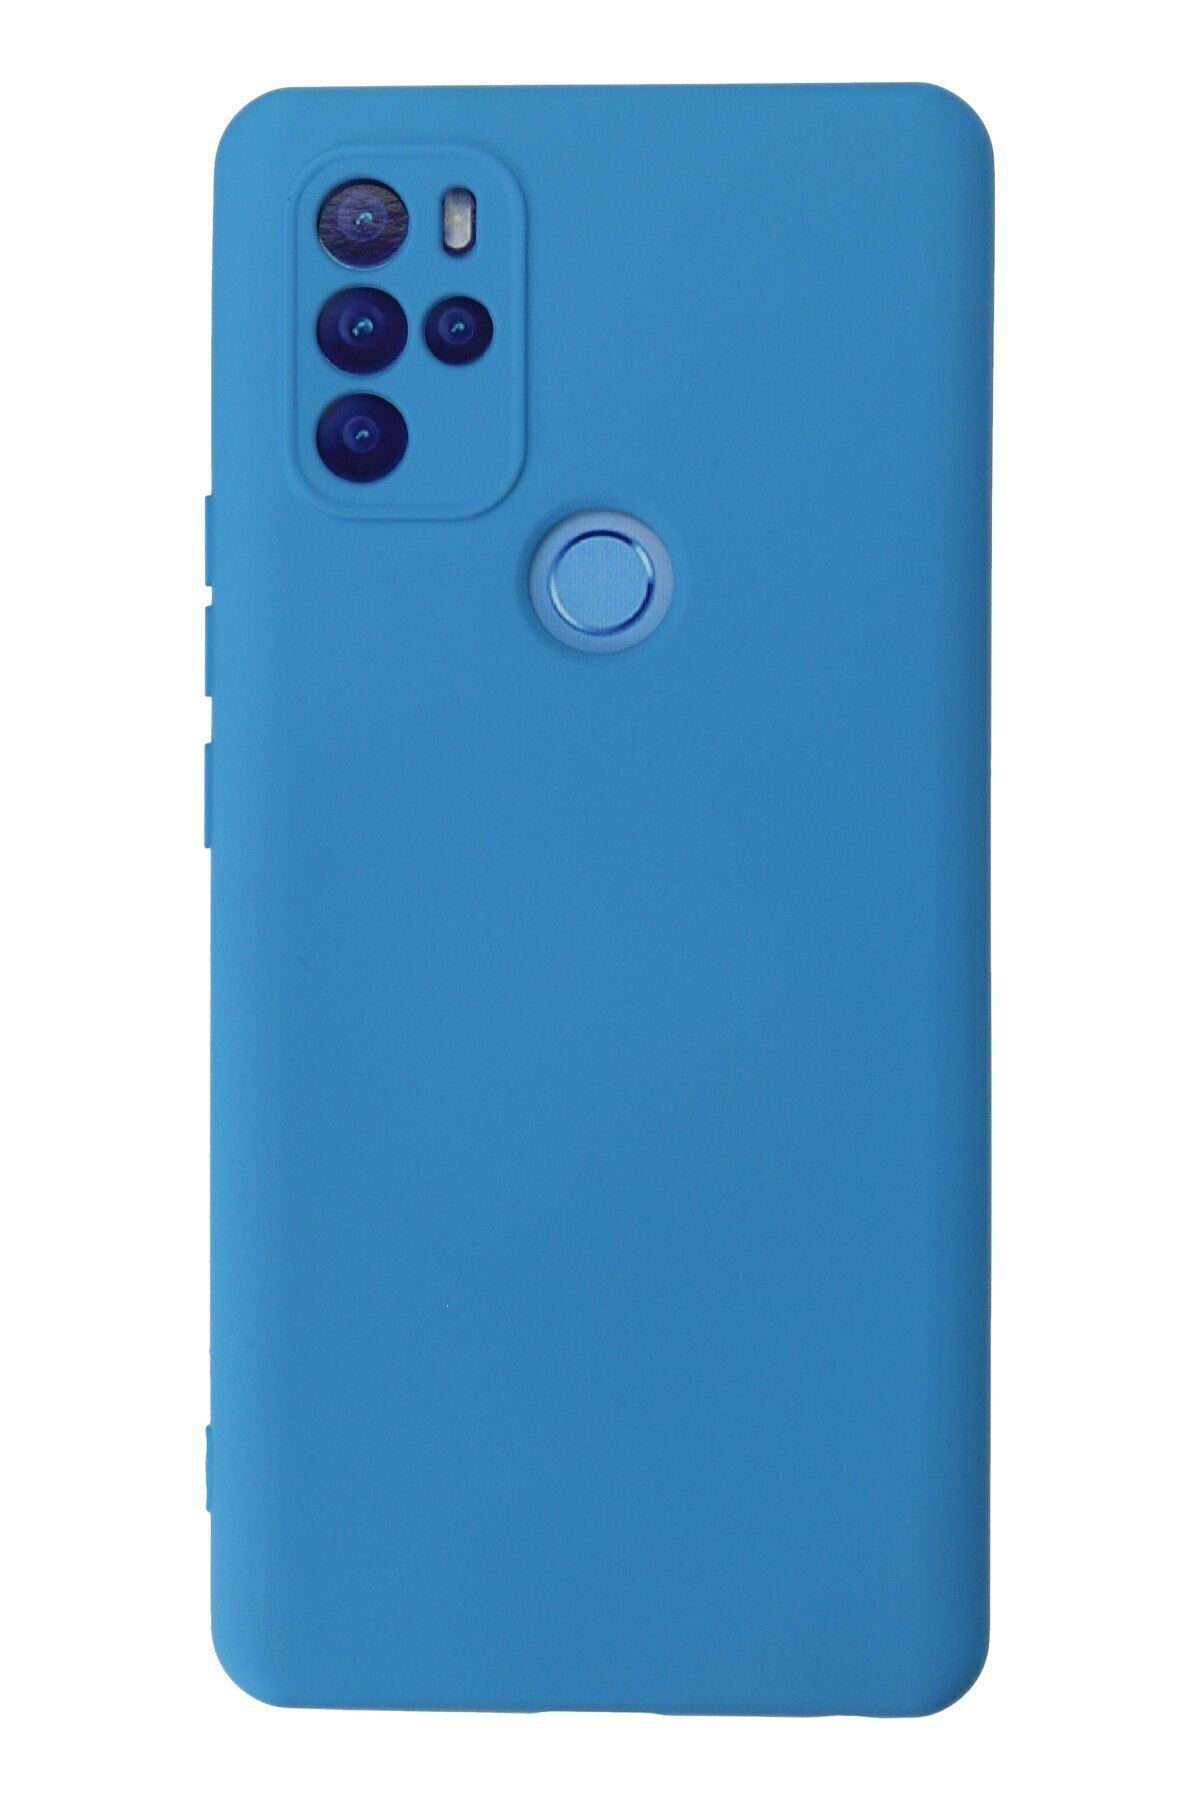 NewFace Omix X300 içi Süet Telefon Kılıfı - Soft Yüzey Kadife Silikon Kapak - Mavi